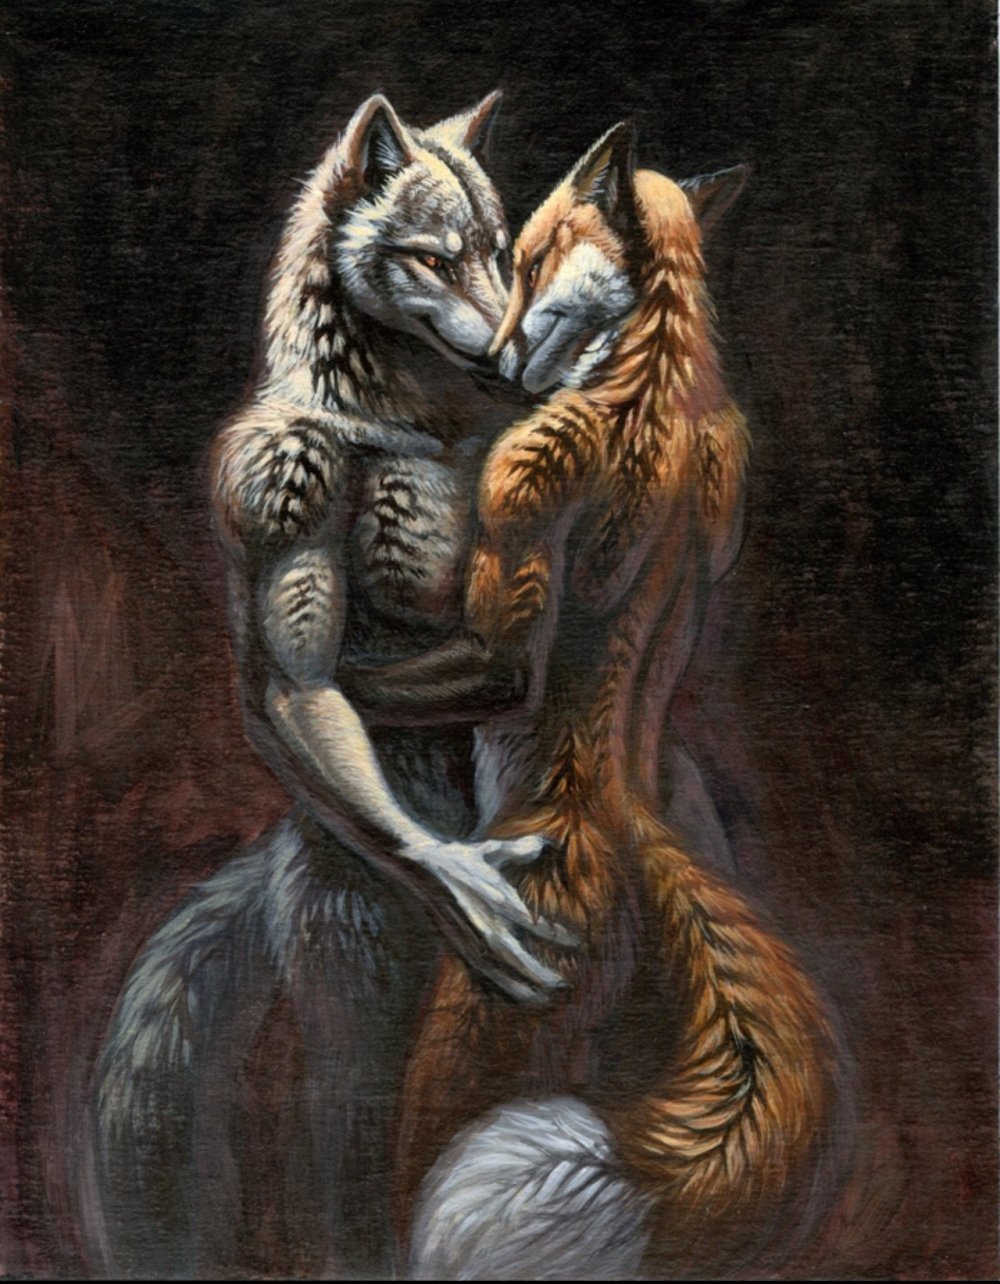 Волк обнимает девушку